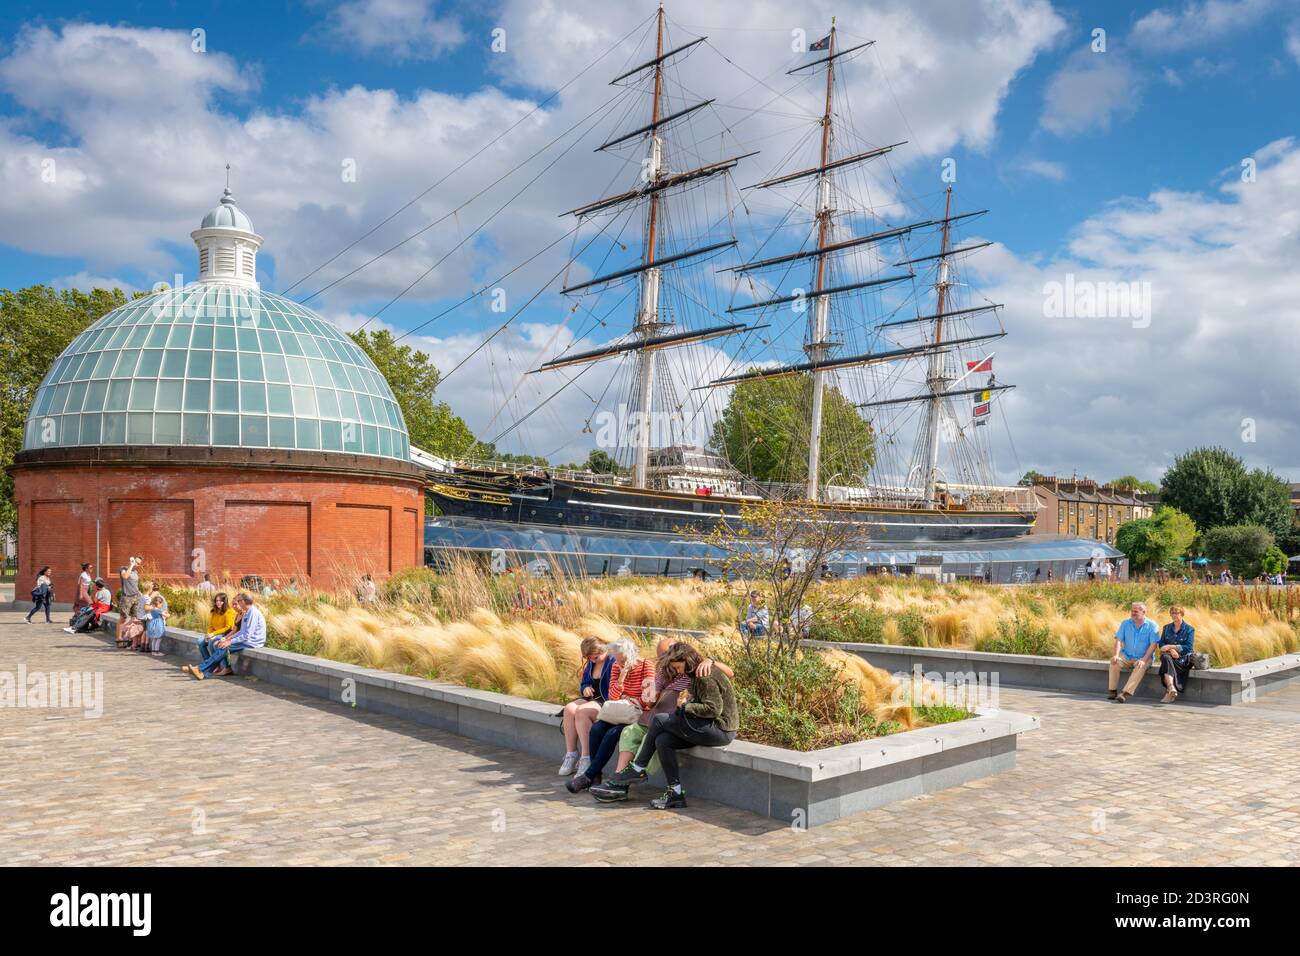 In una giornata di sole e di brezza moderata, il museo Cutty Sark di Greenwich è insolitamente tranquillo, dato che i visitatori si numerano in tutta la capitale ar Foto Stock